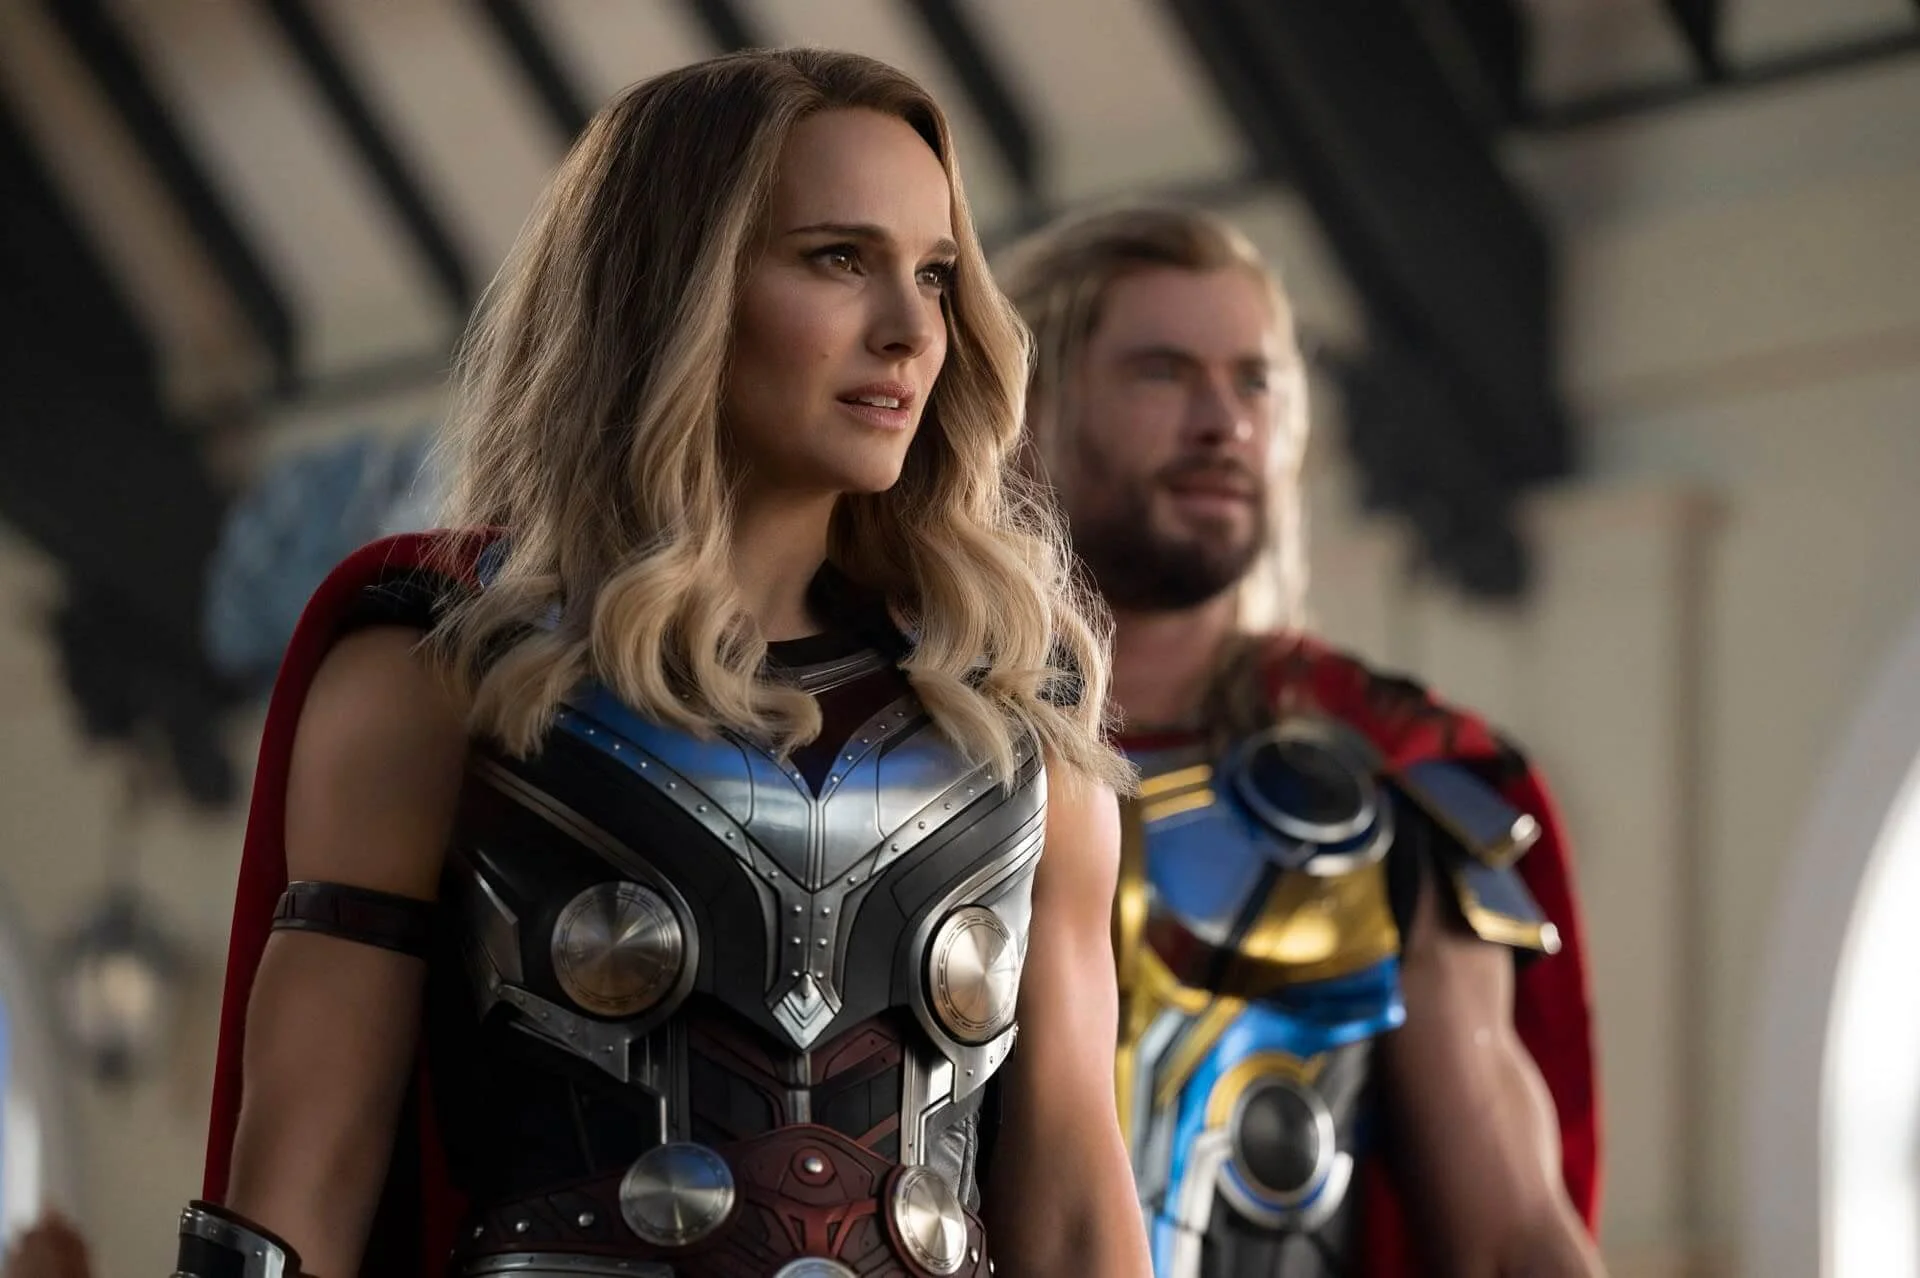 Box Office: Nagyot esett az érdeklődés a Thor: Szerelem és mennydörgés iránt, de uralta a jegyeladásokat még így is